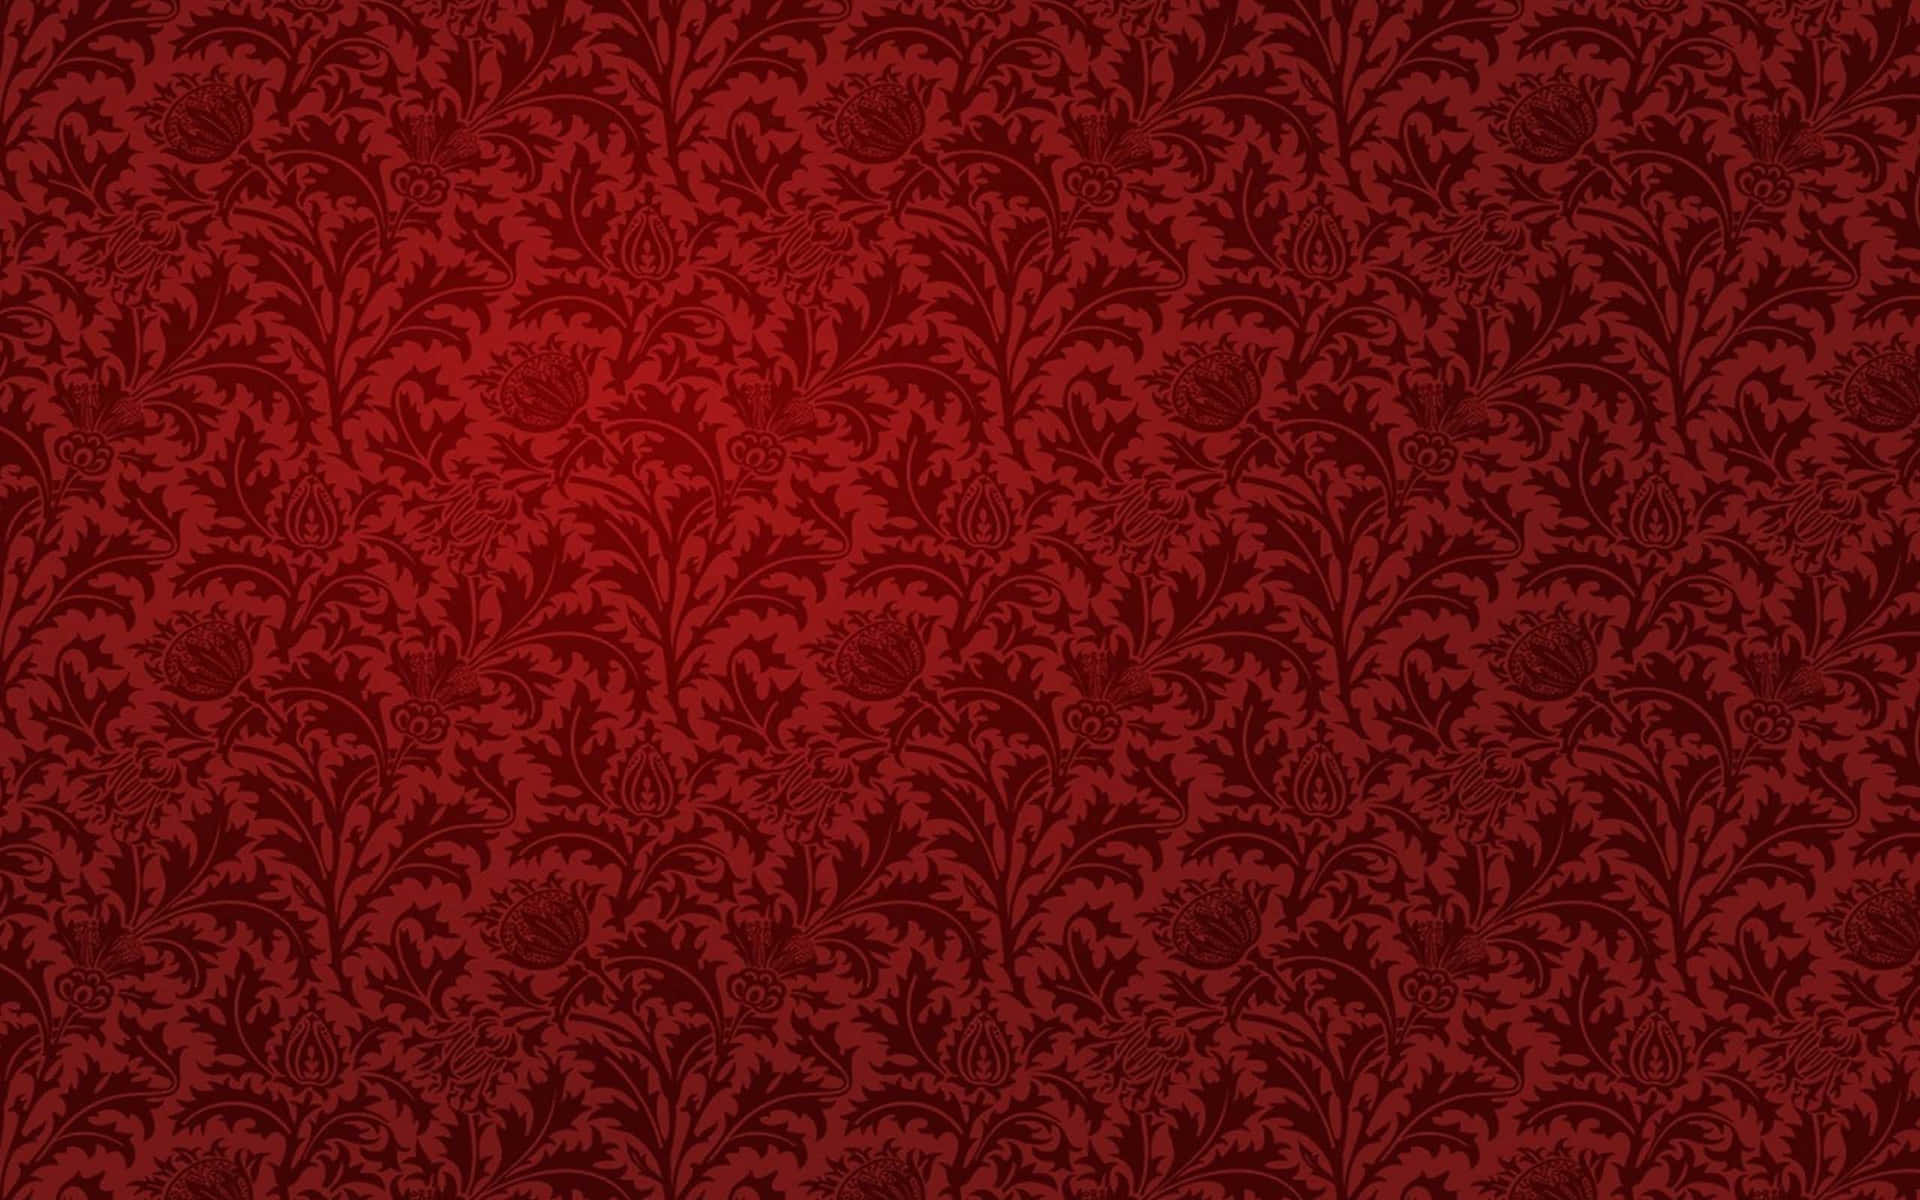 Imagende Papel Tapiz Con Patrón Floral Texturizado En Rojo.